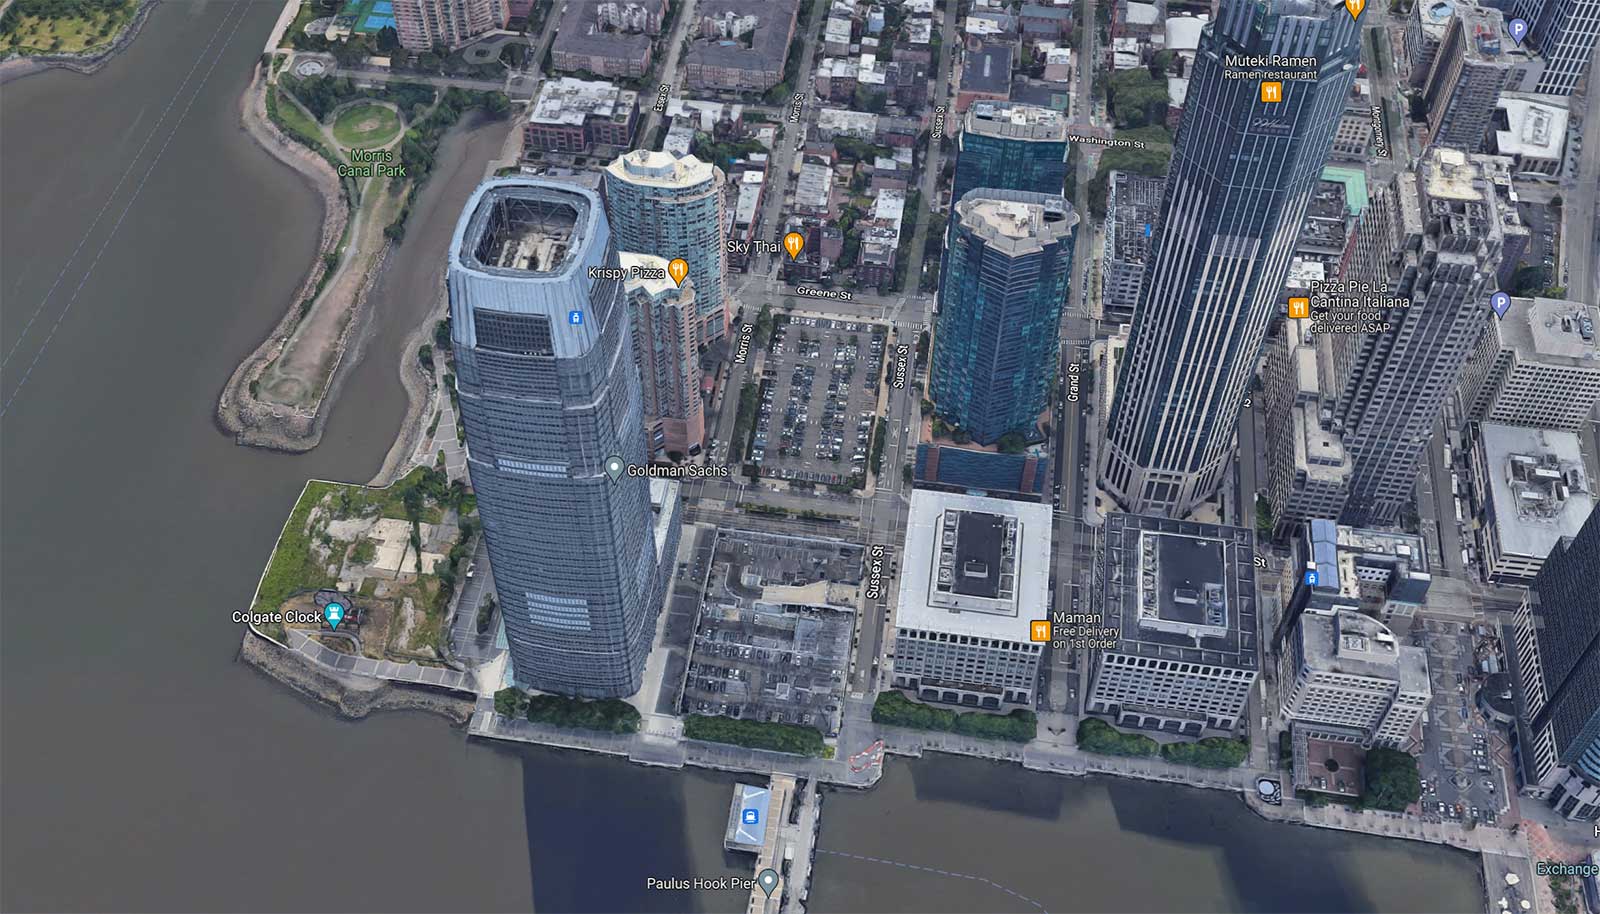 Goldman Sachs Tower Development Jersey City